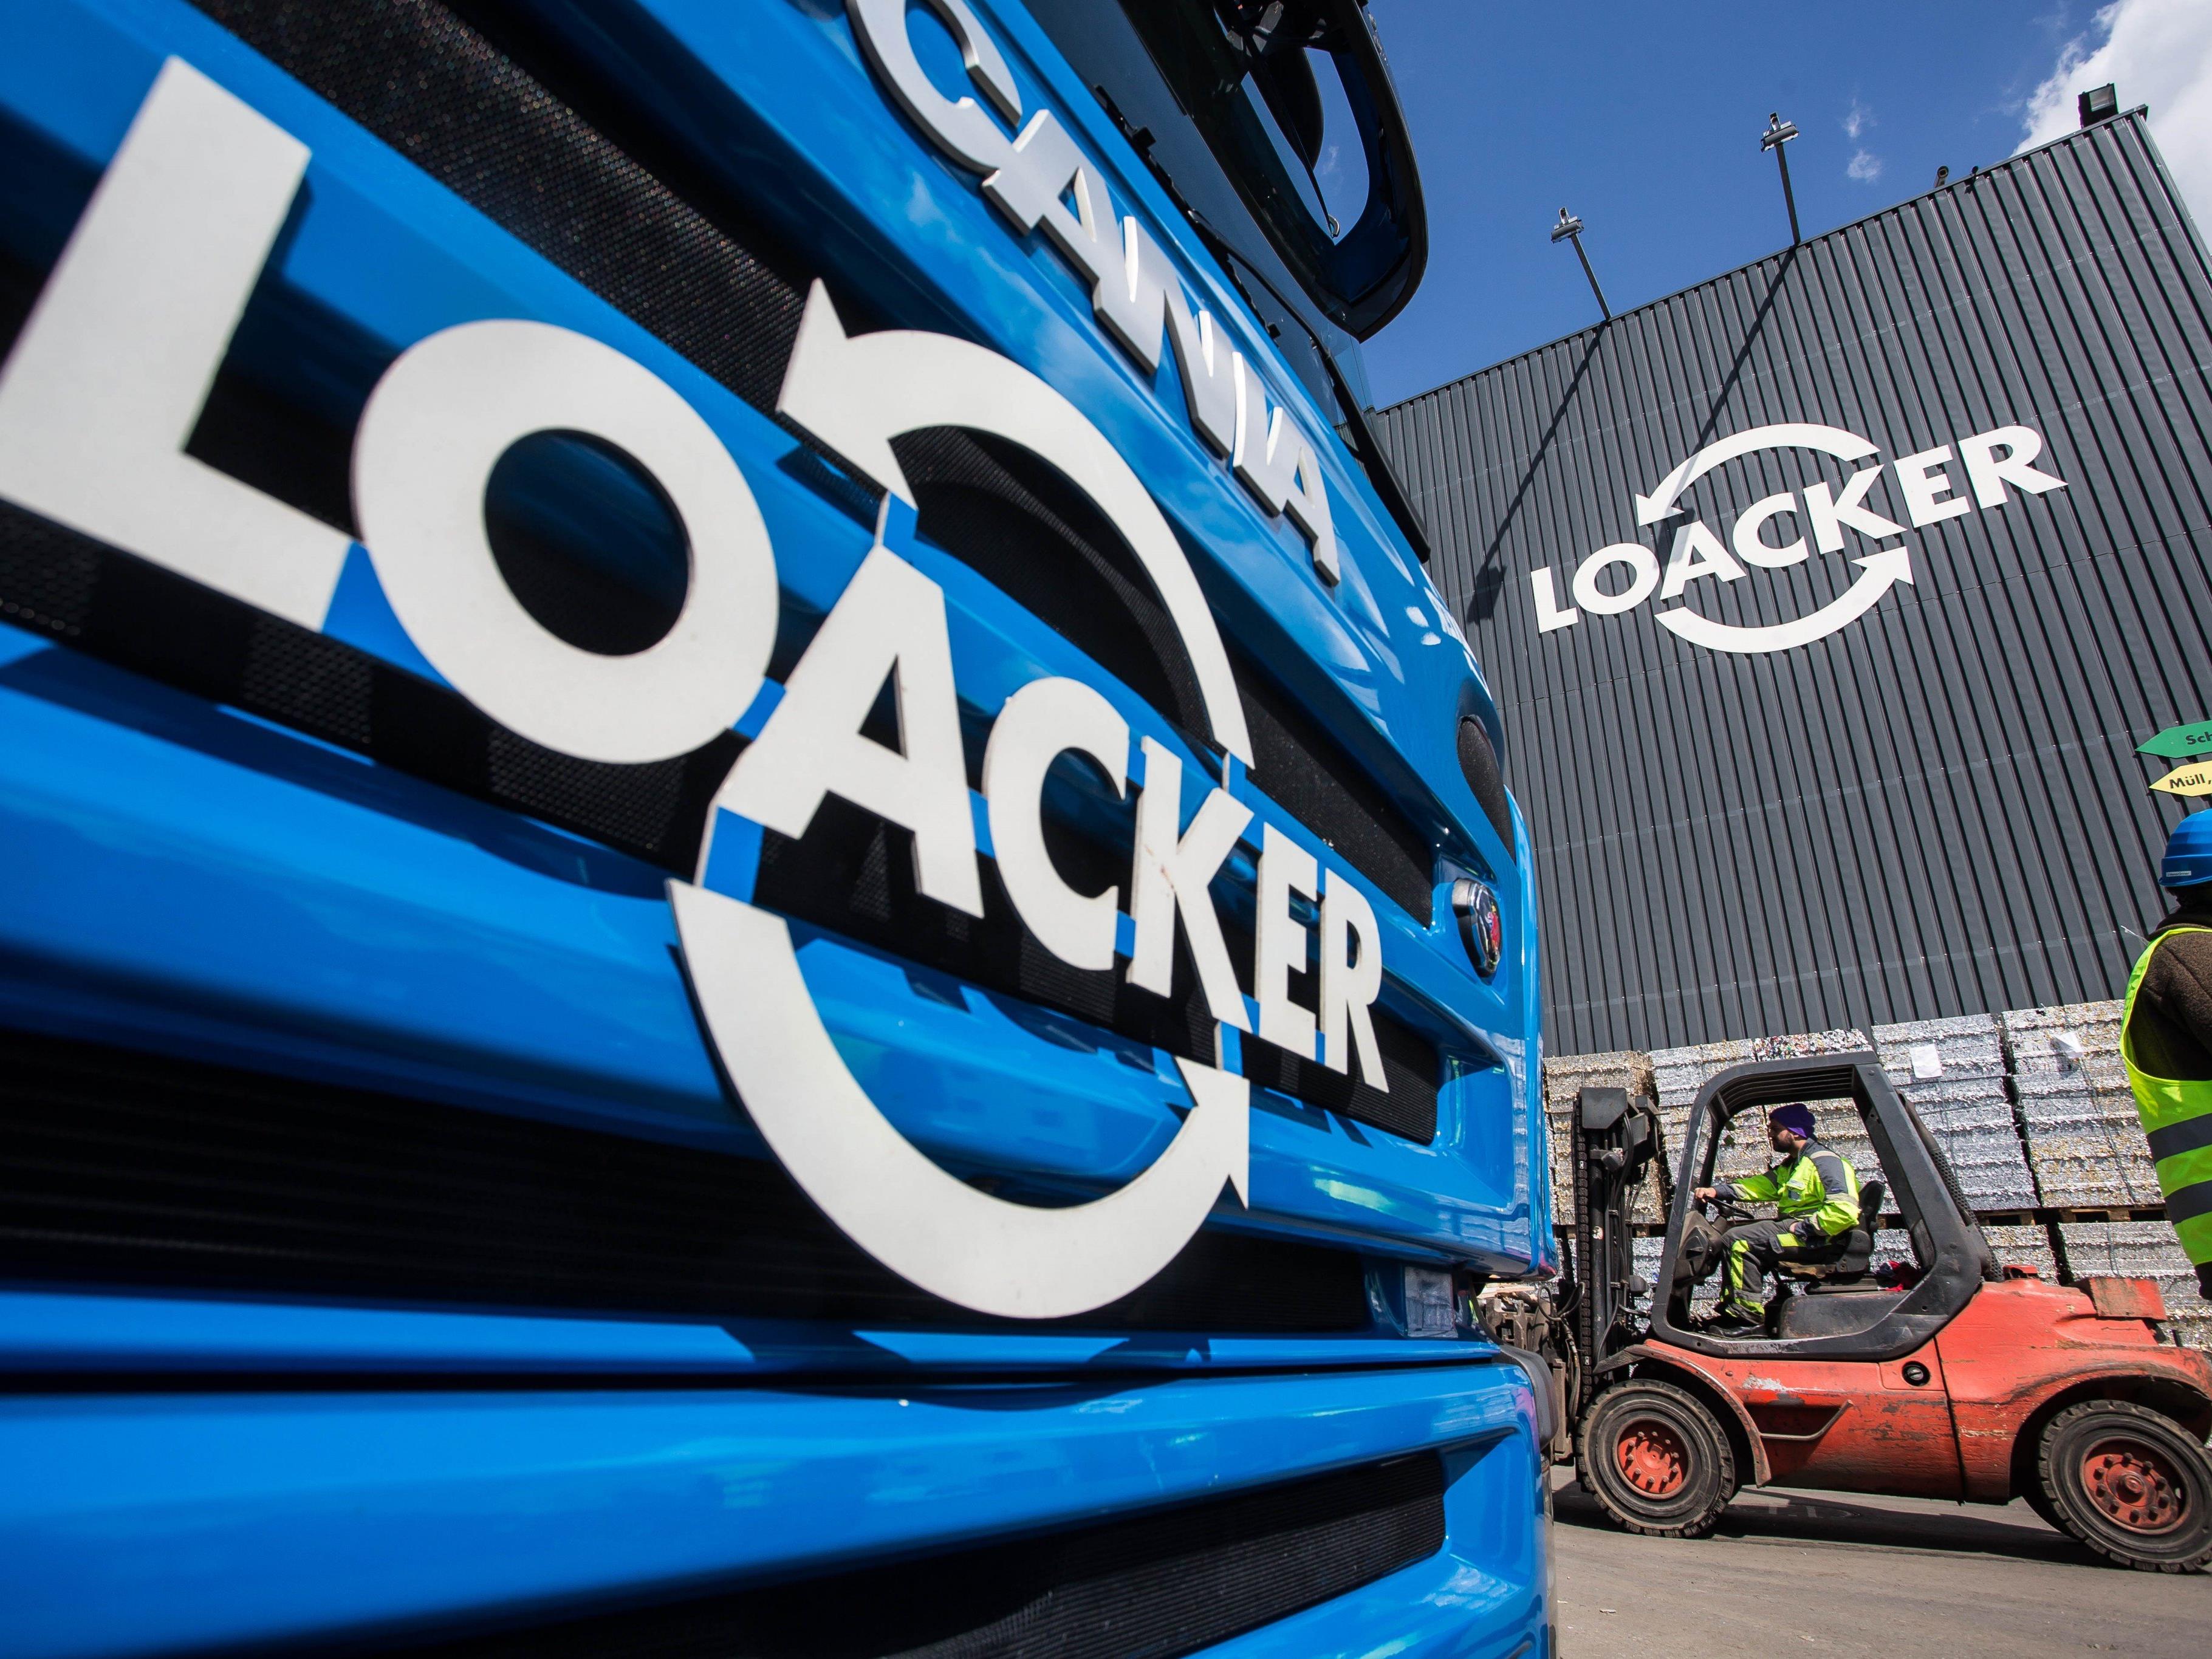 Das Familienunternehmen Loacker Recycling konnte trotz Umsatzrückgang das operative Ergebnis im Vergleich zum Vorjahr steigern.